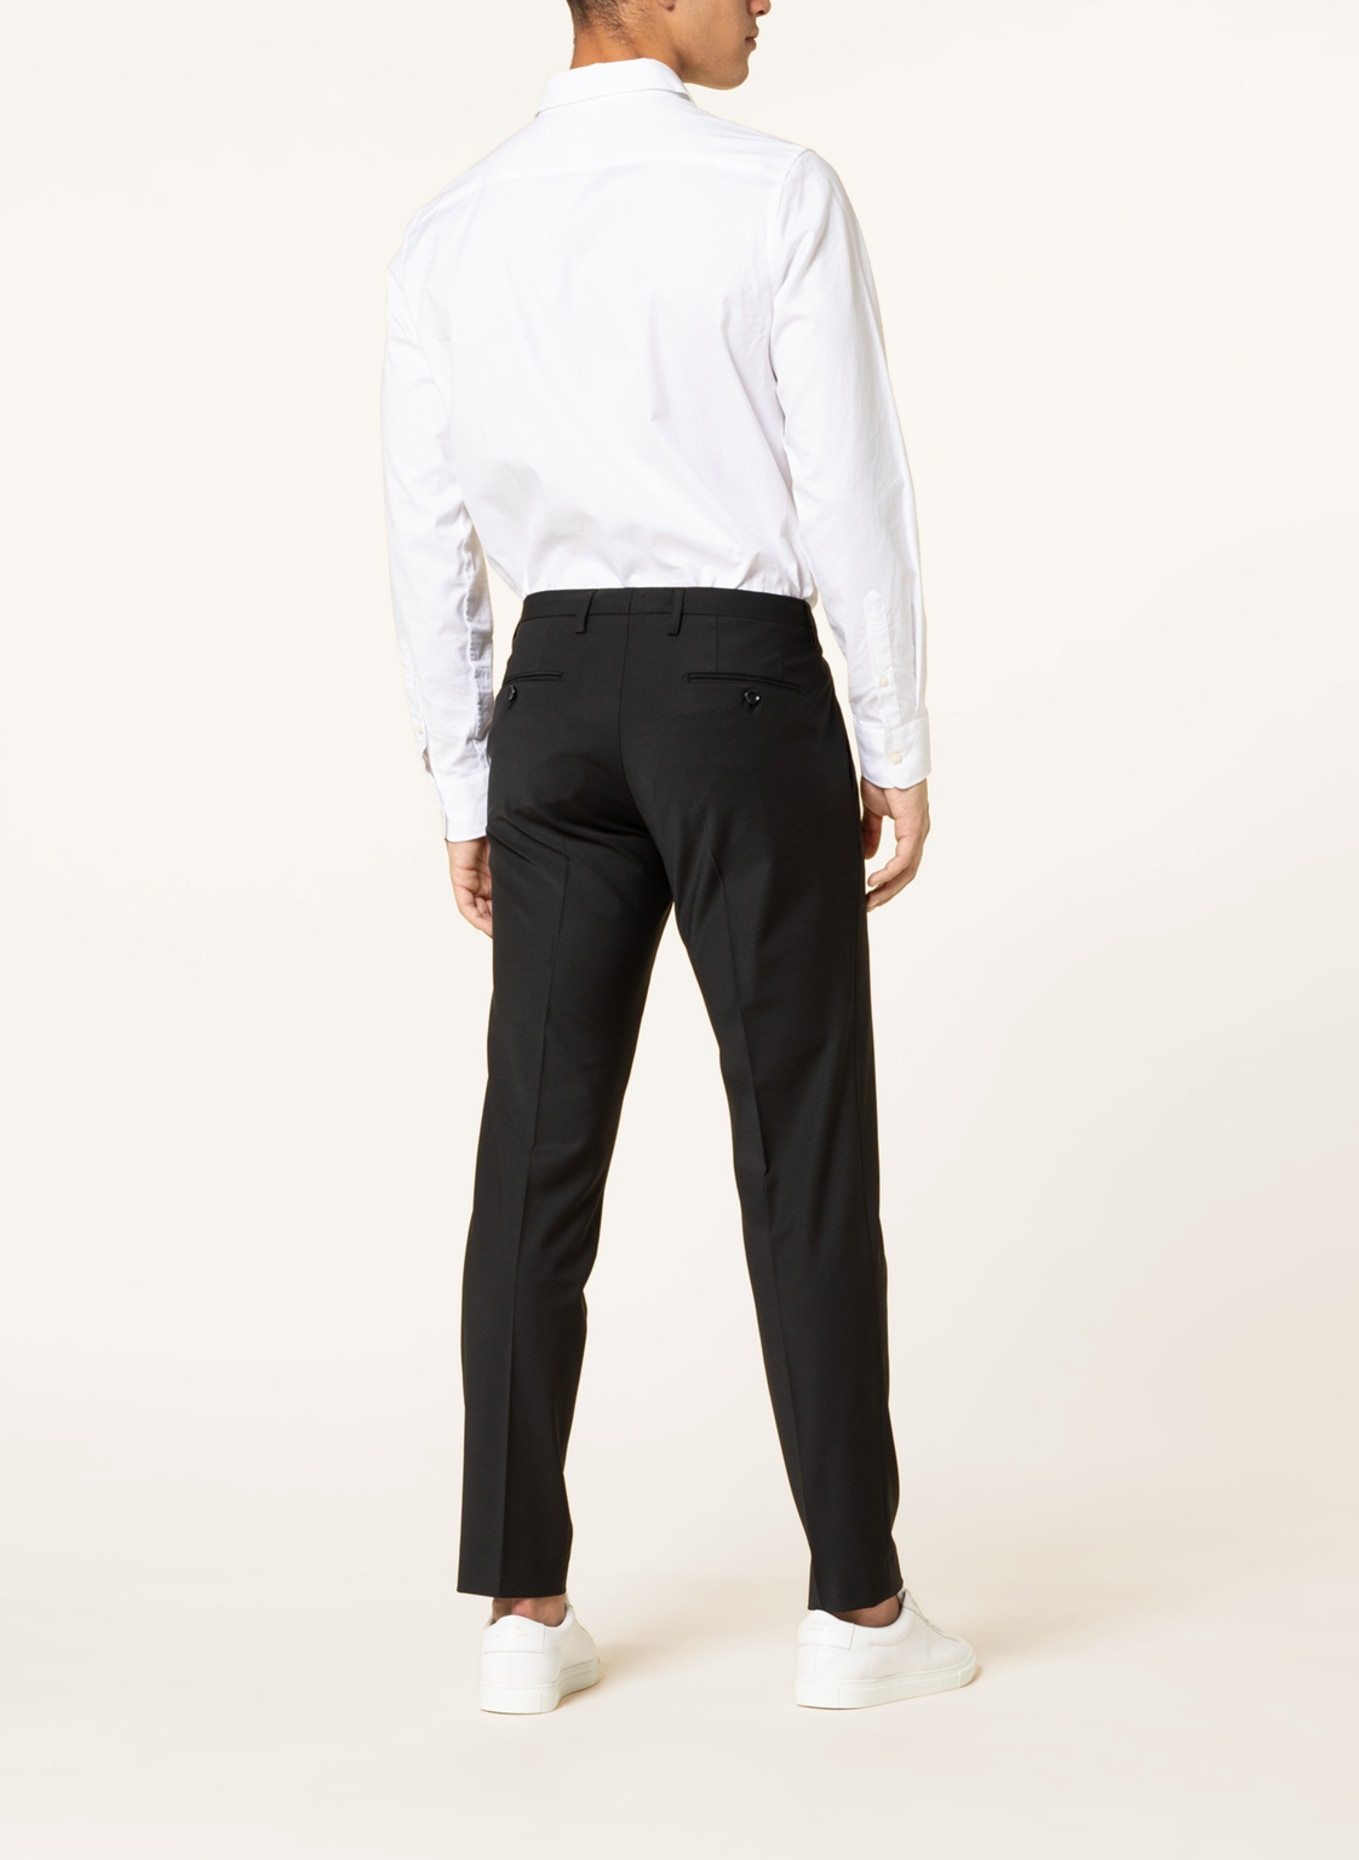 CINQUE Suit trousers CICASTELLO super slim fit, Color: 99 (Image 4)